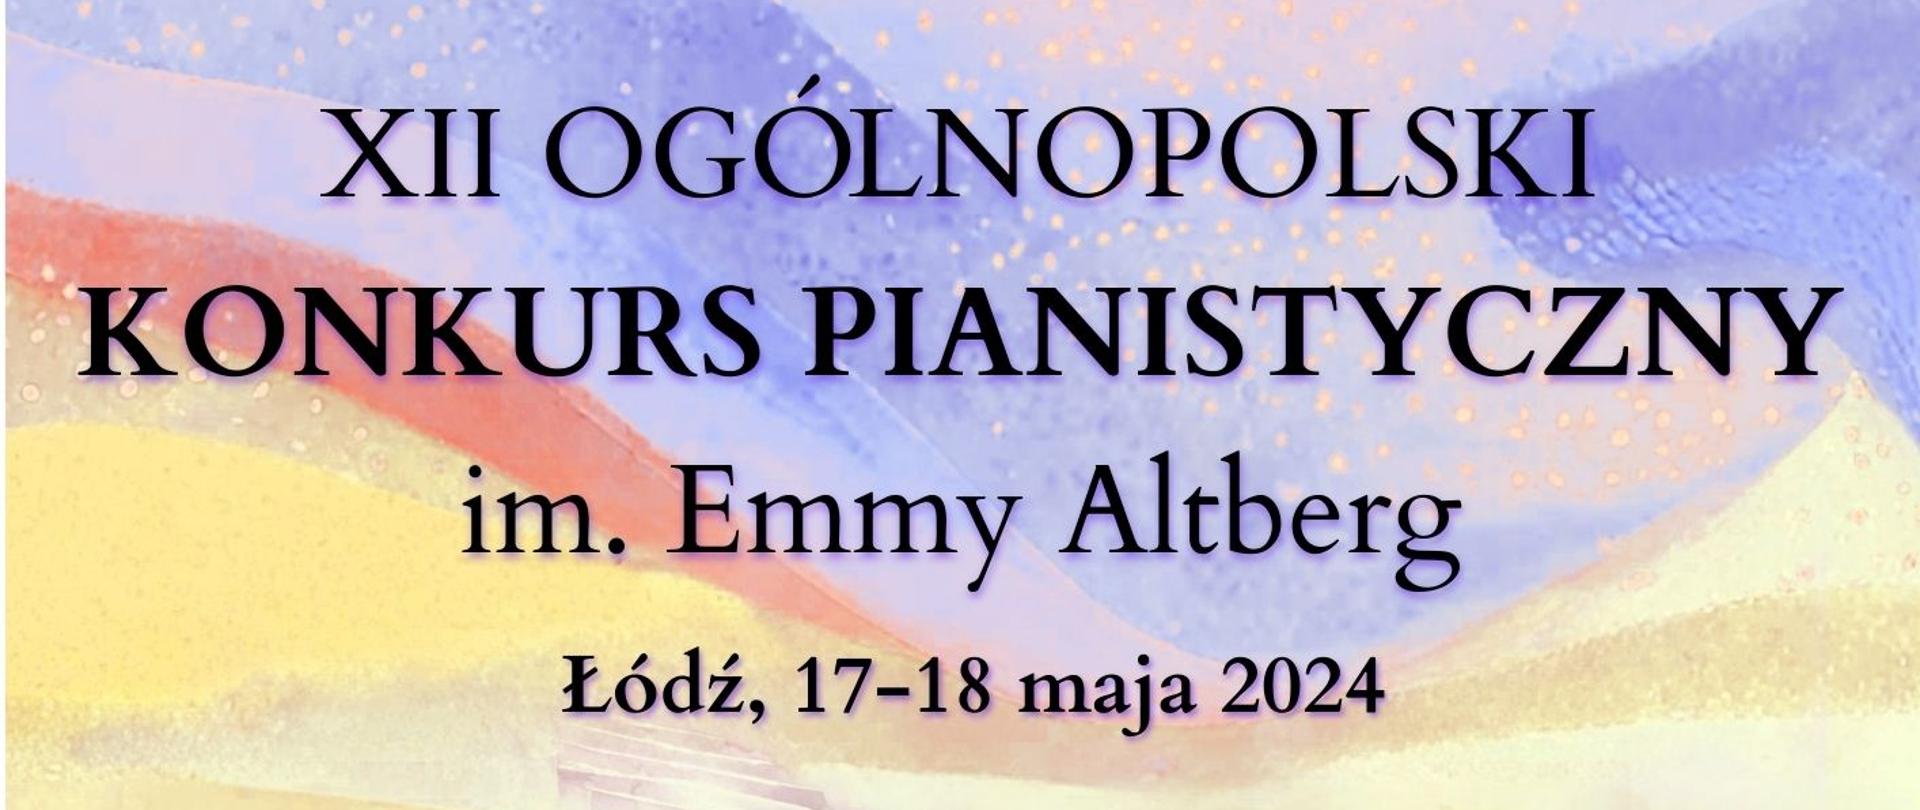 XII Ogólnopolski Konkurs Pianistyczny im. Emmy Altberg - plakat